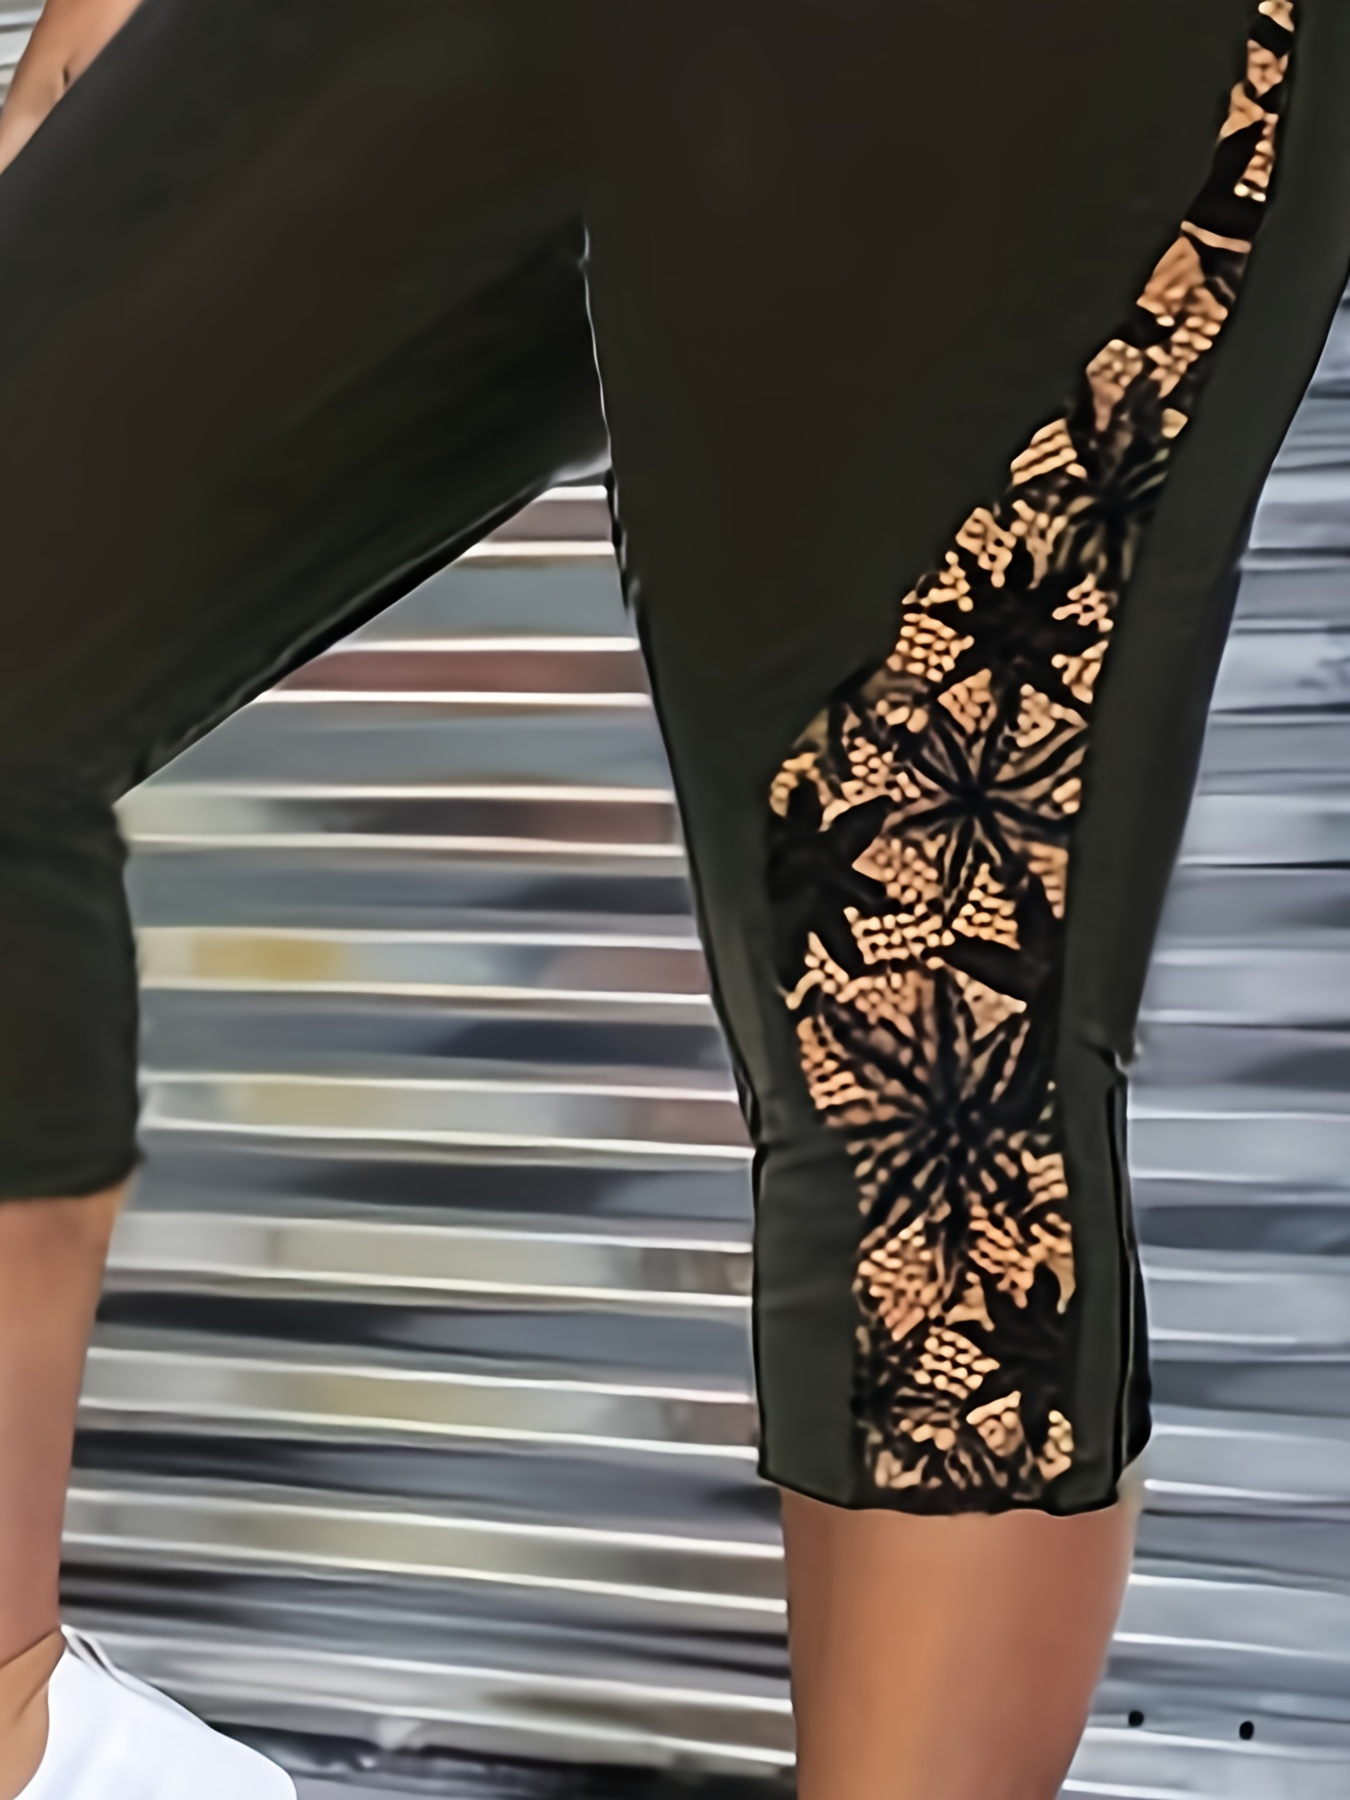 Stretch lace leggings Woman, Black